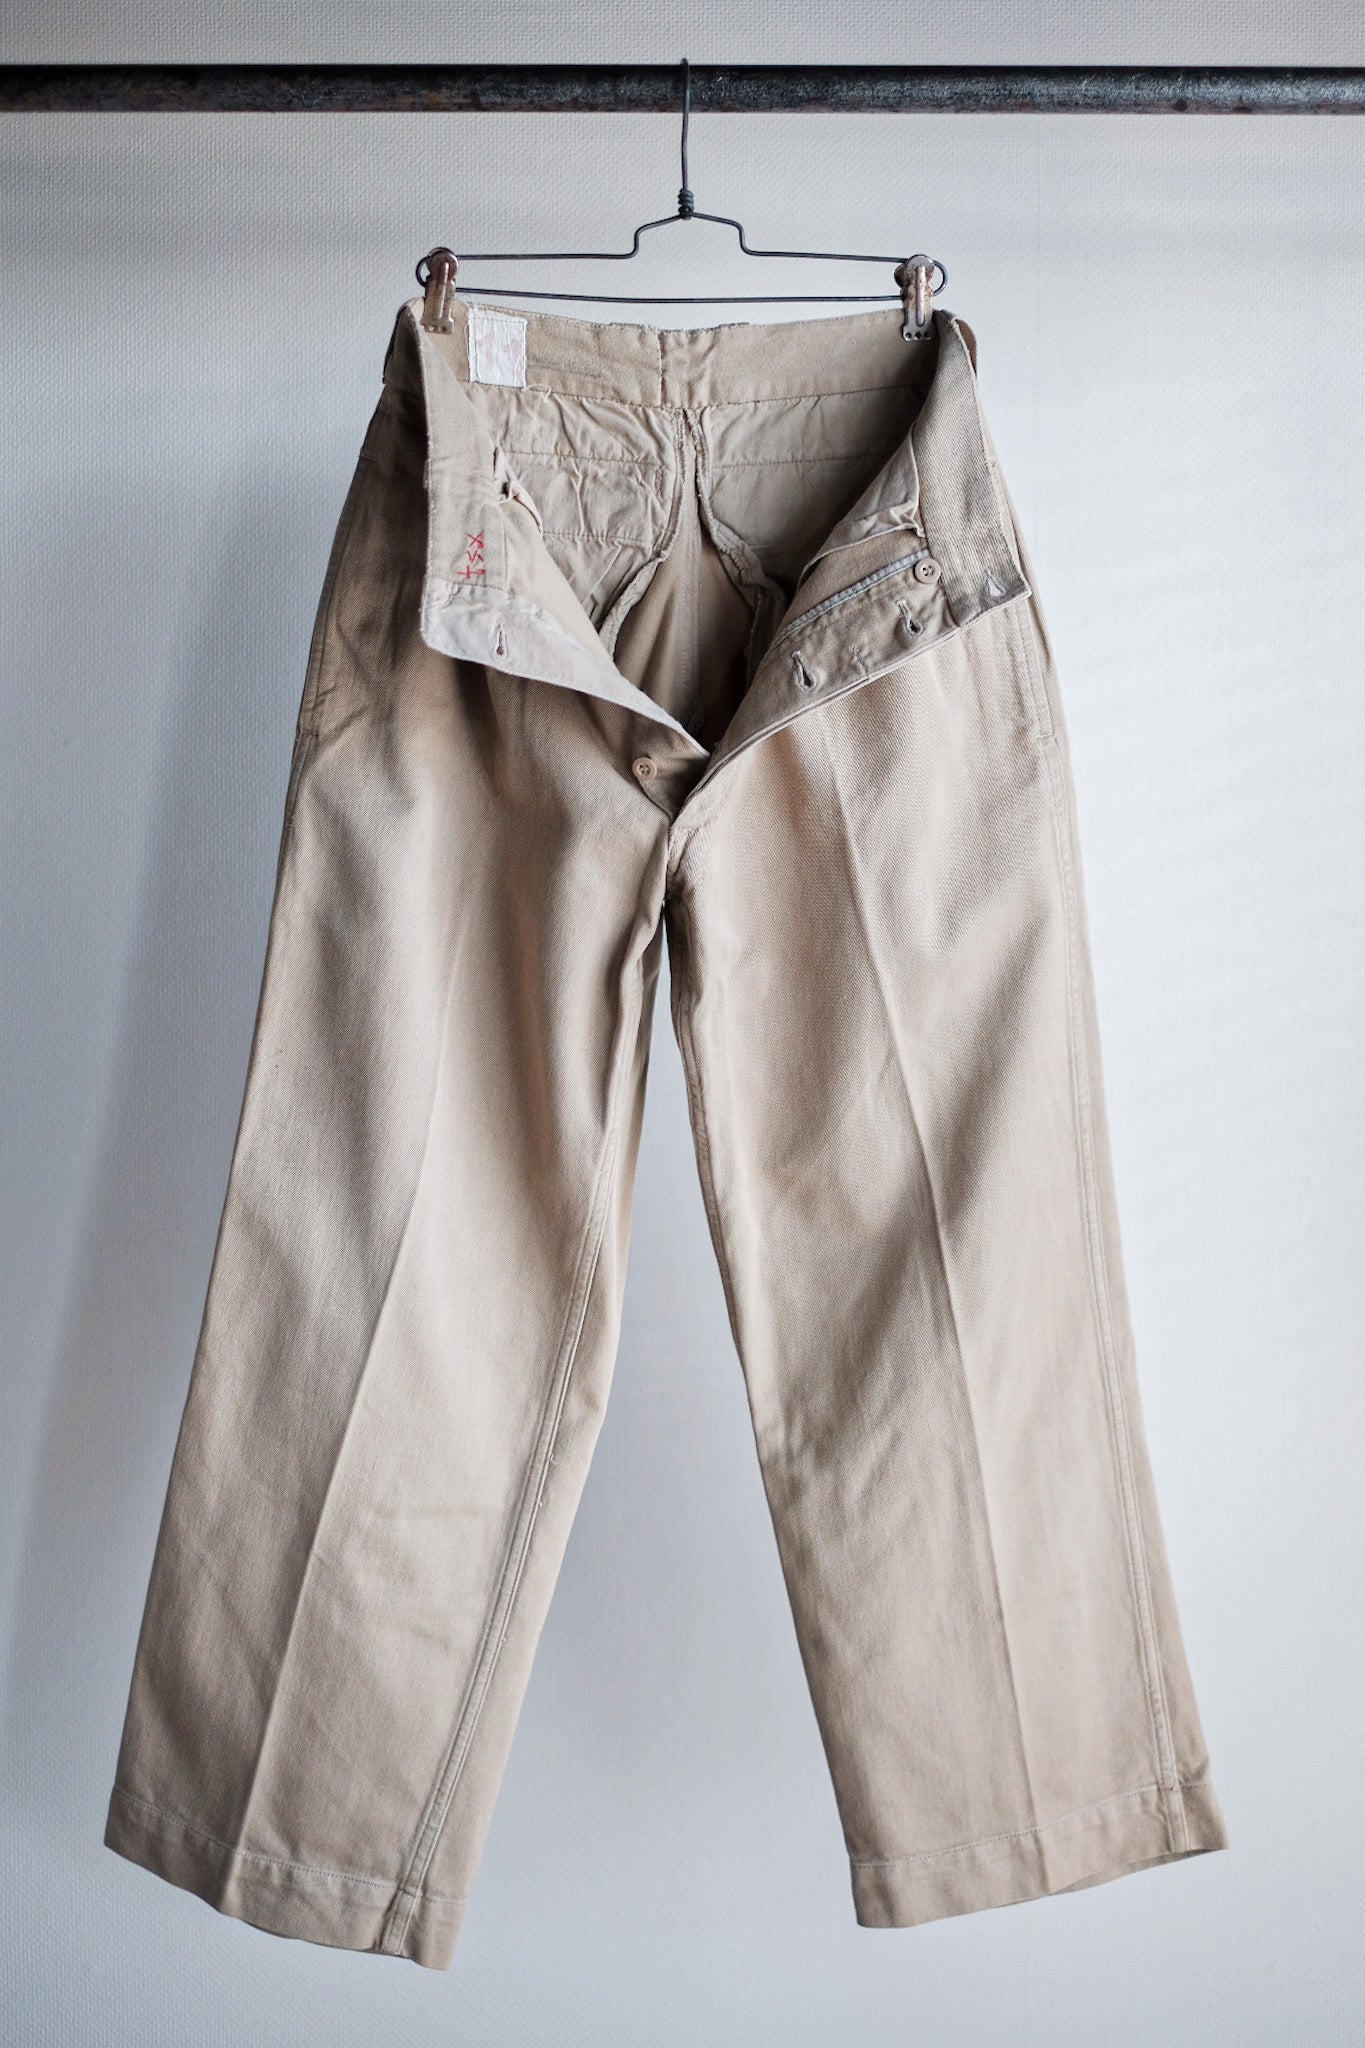 [~ 60's] Taille des pantalons chino de l'armée française M52.11